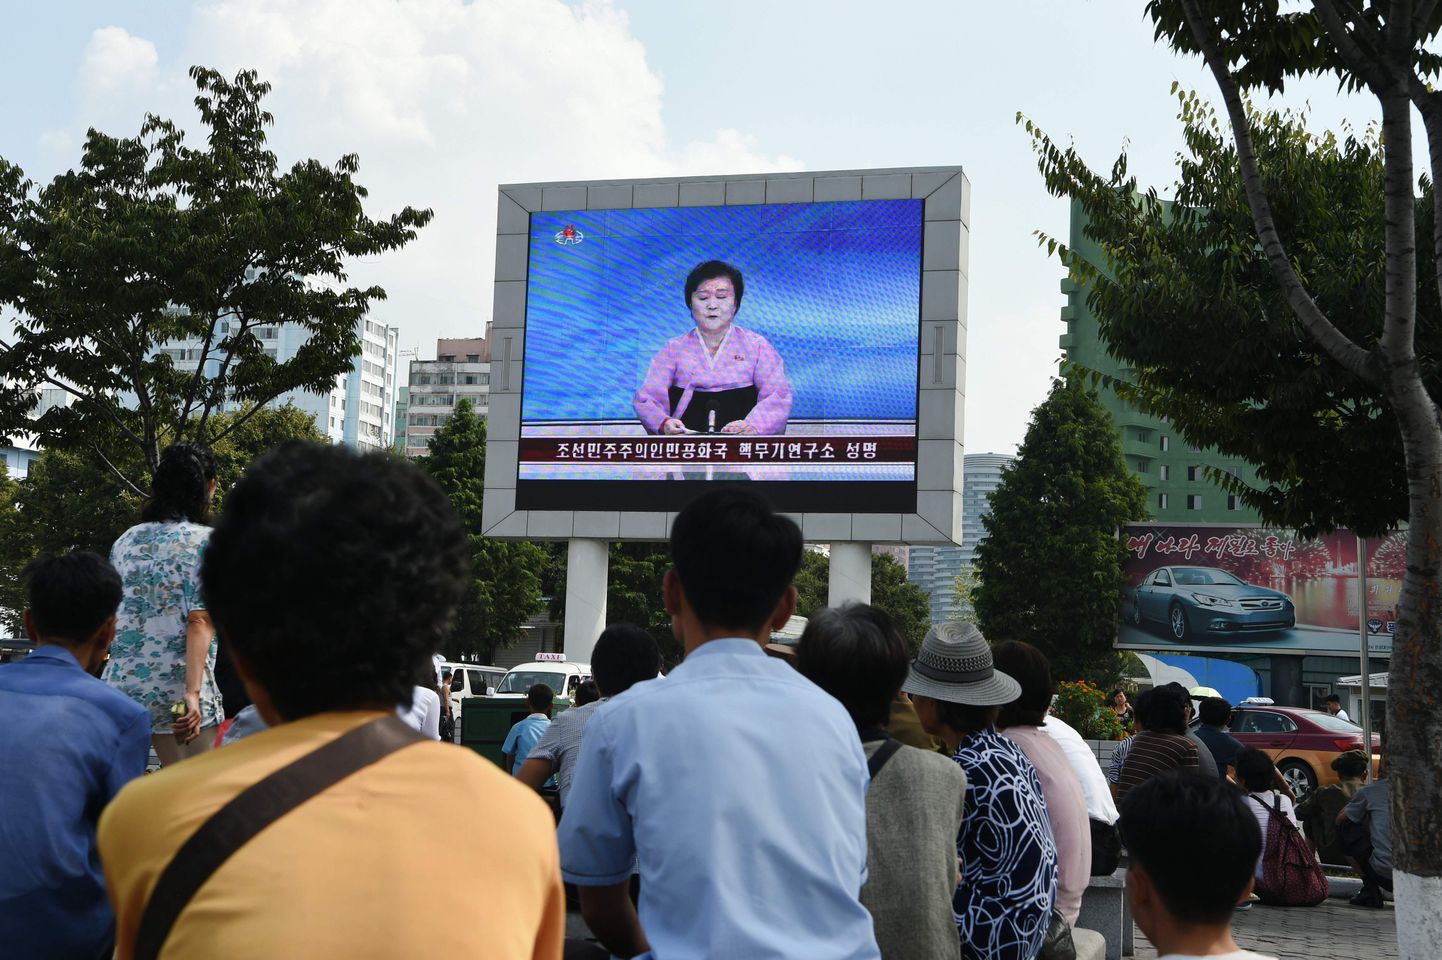 Kuulekad kodanikud jälgivad vaid Põhja-Korea riiklikku televisiooni. Selleks on üles riputatud suur ekraan   Pyongyangi raudteejaama sissepääsu juurde.